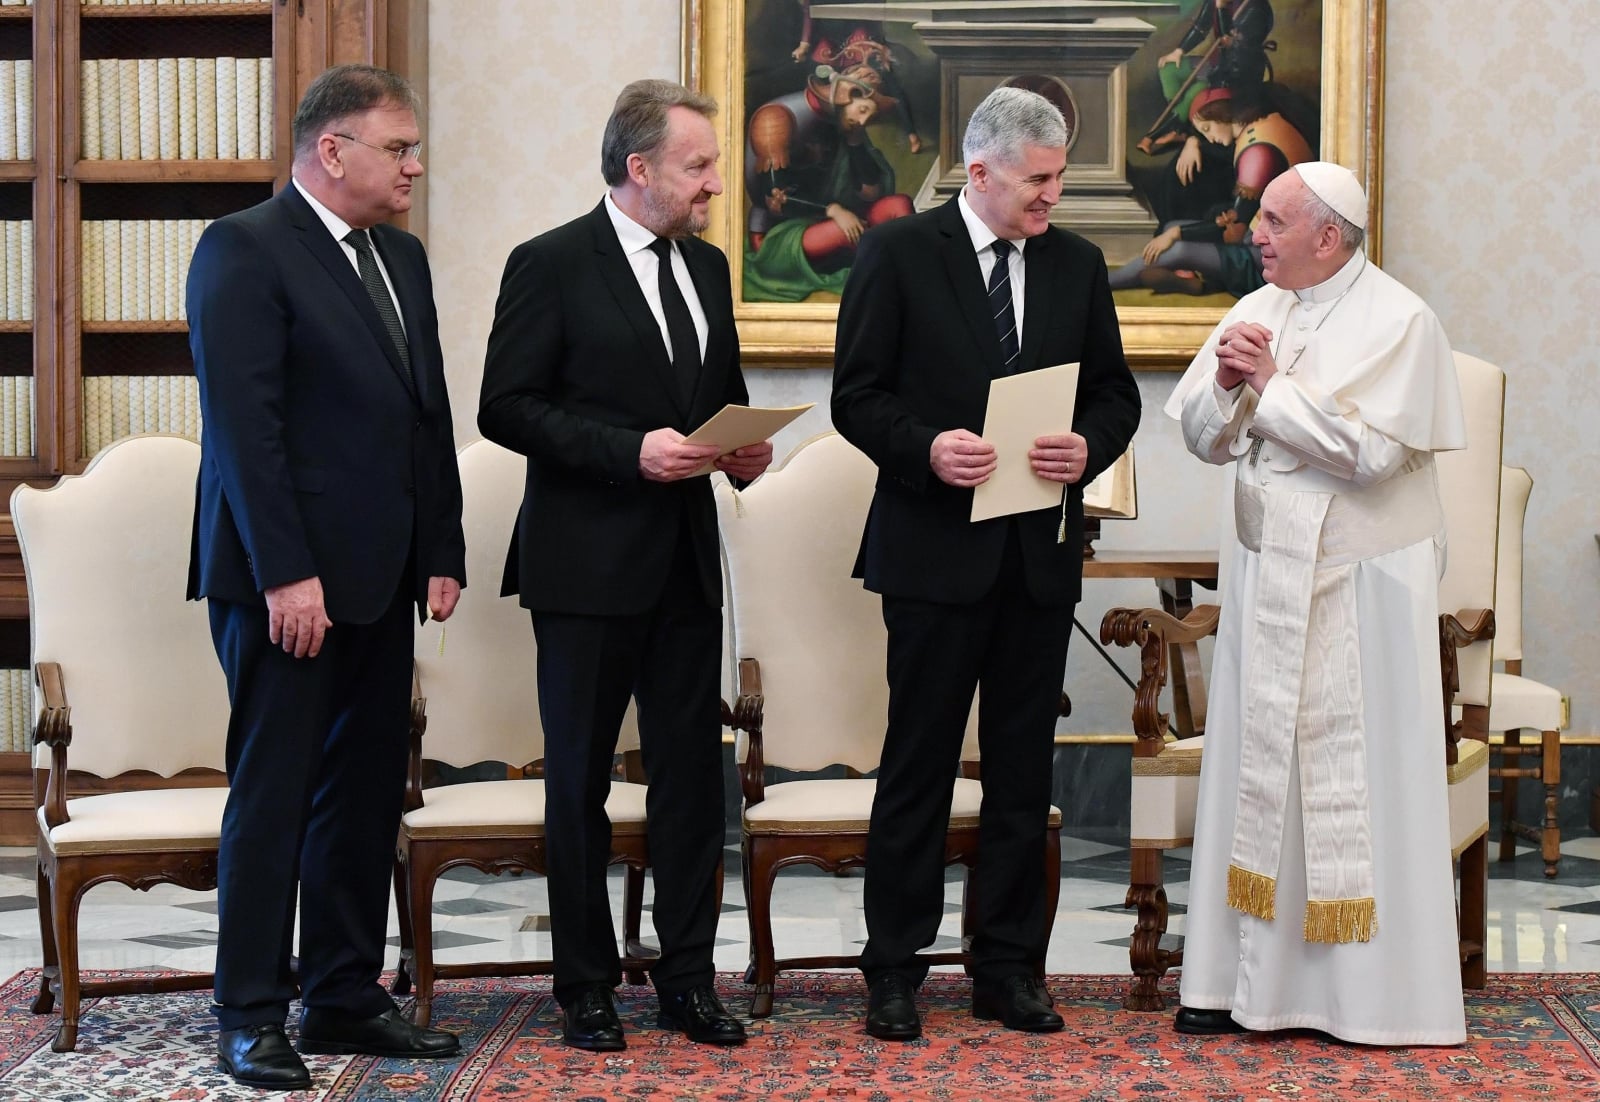 Papież Franciszek z trzema członkami prezydencji Bośni i Hercegowiny podczas prywatnej audiencji w Watykanie, fot. EPA/ETTORE FERRARI